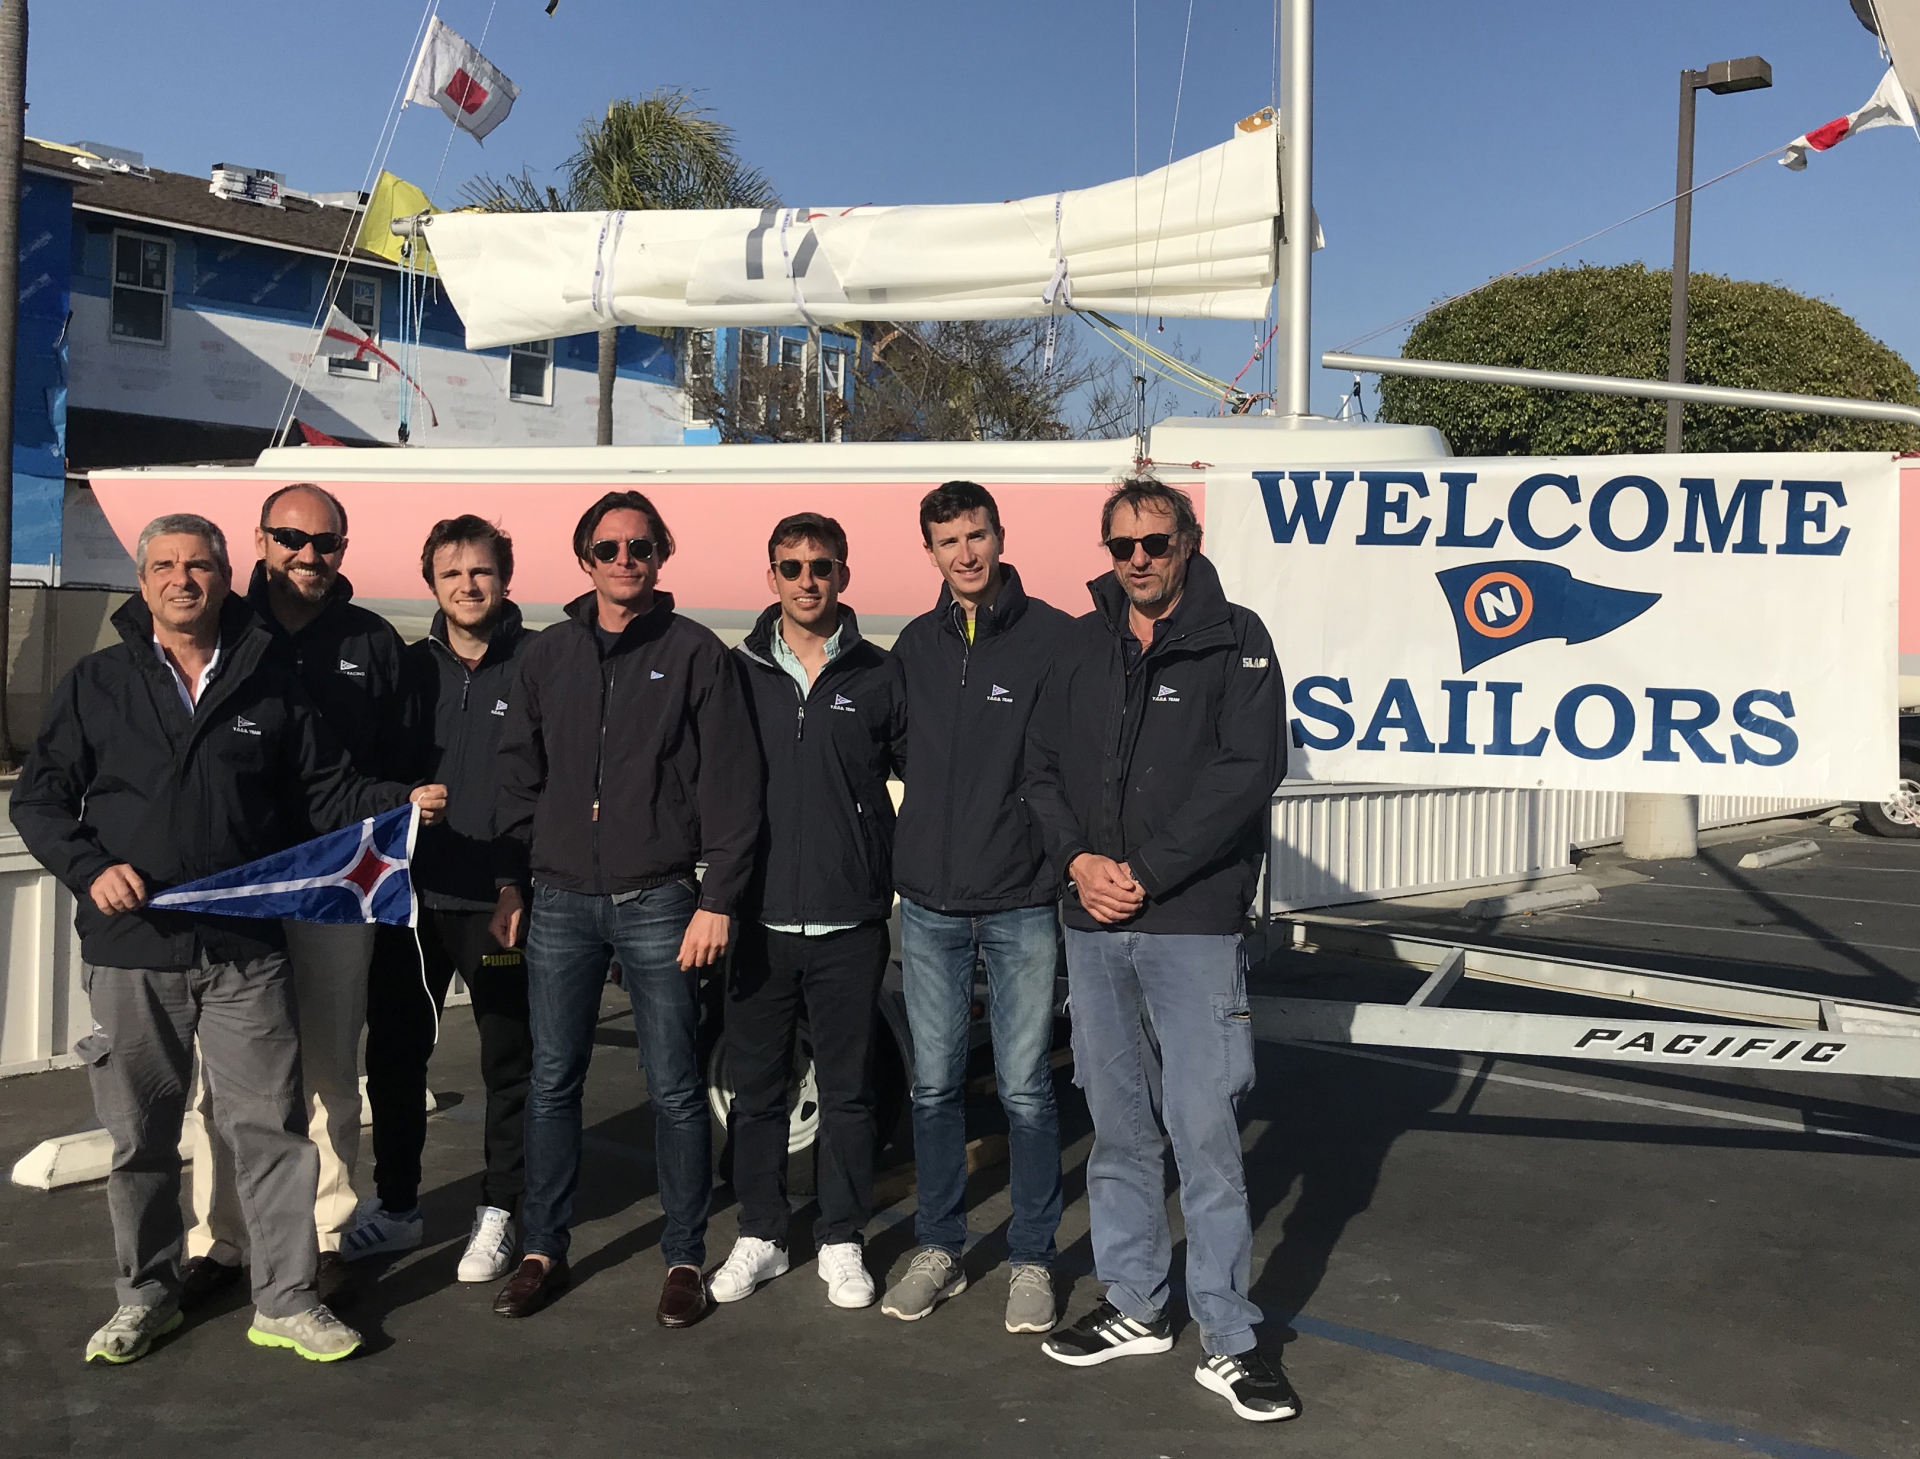 Yacht Club Costa Smeralda team first Italian crew at Baldwin Cup - NEWS - Yacht Club Costa Smeralda